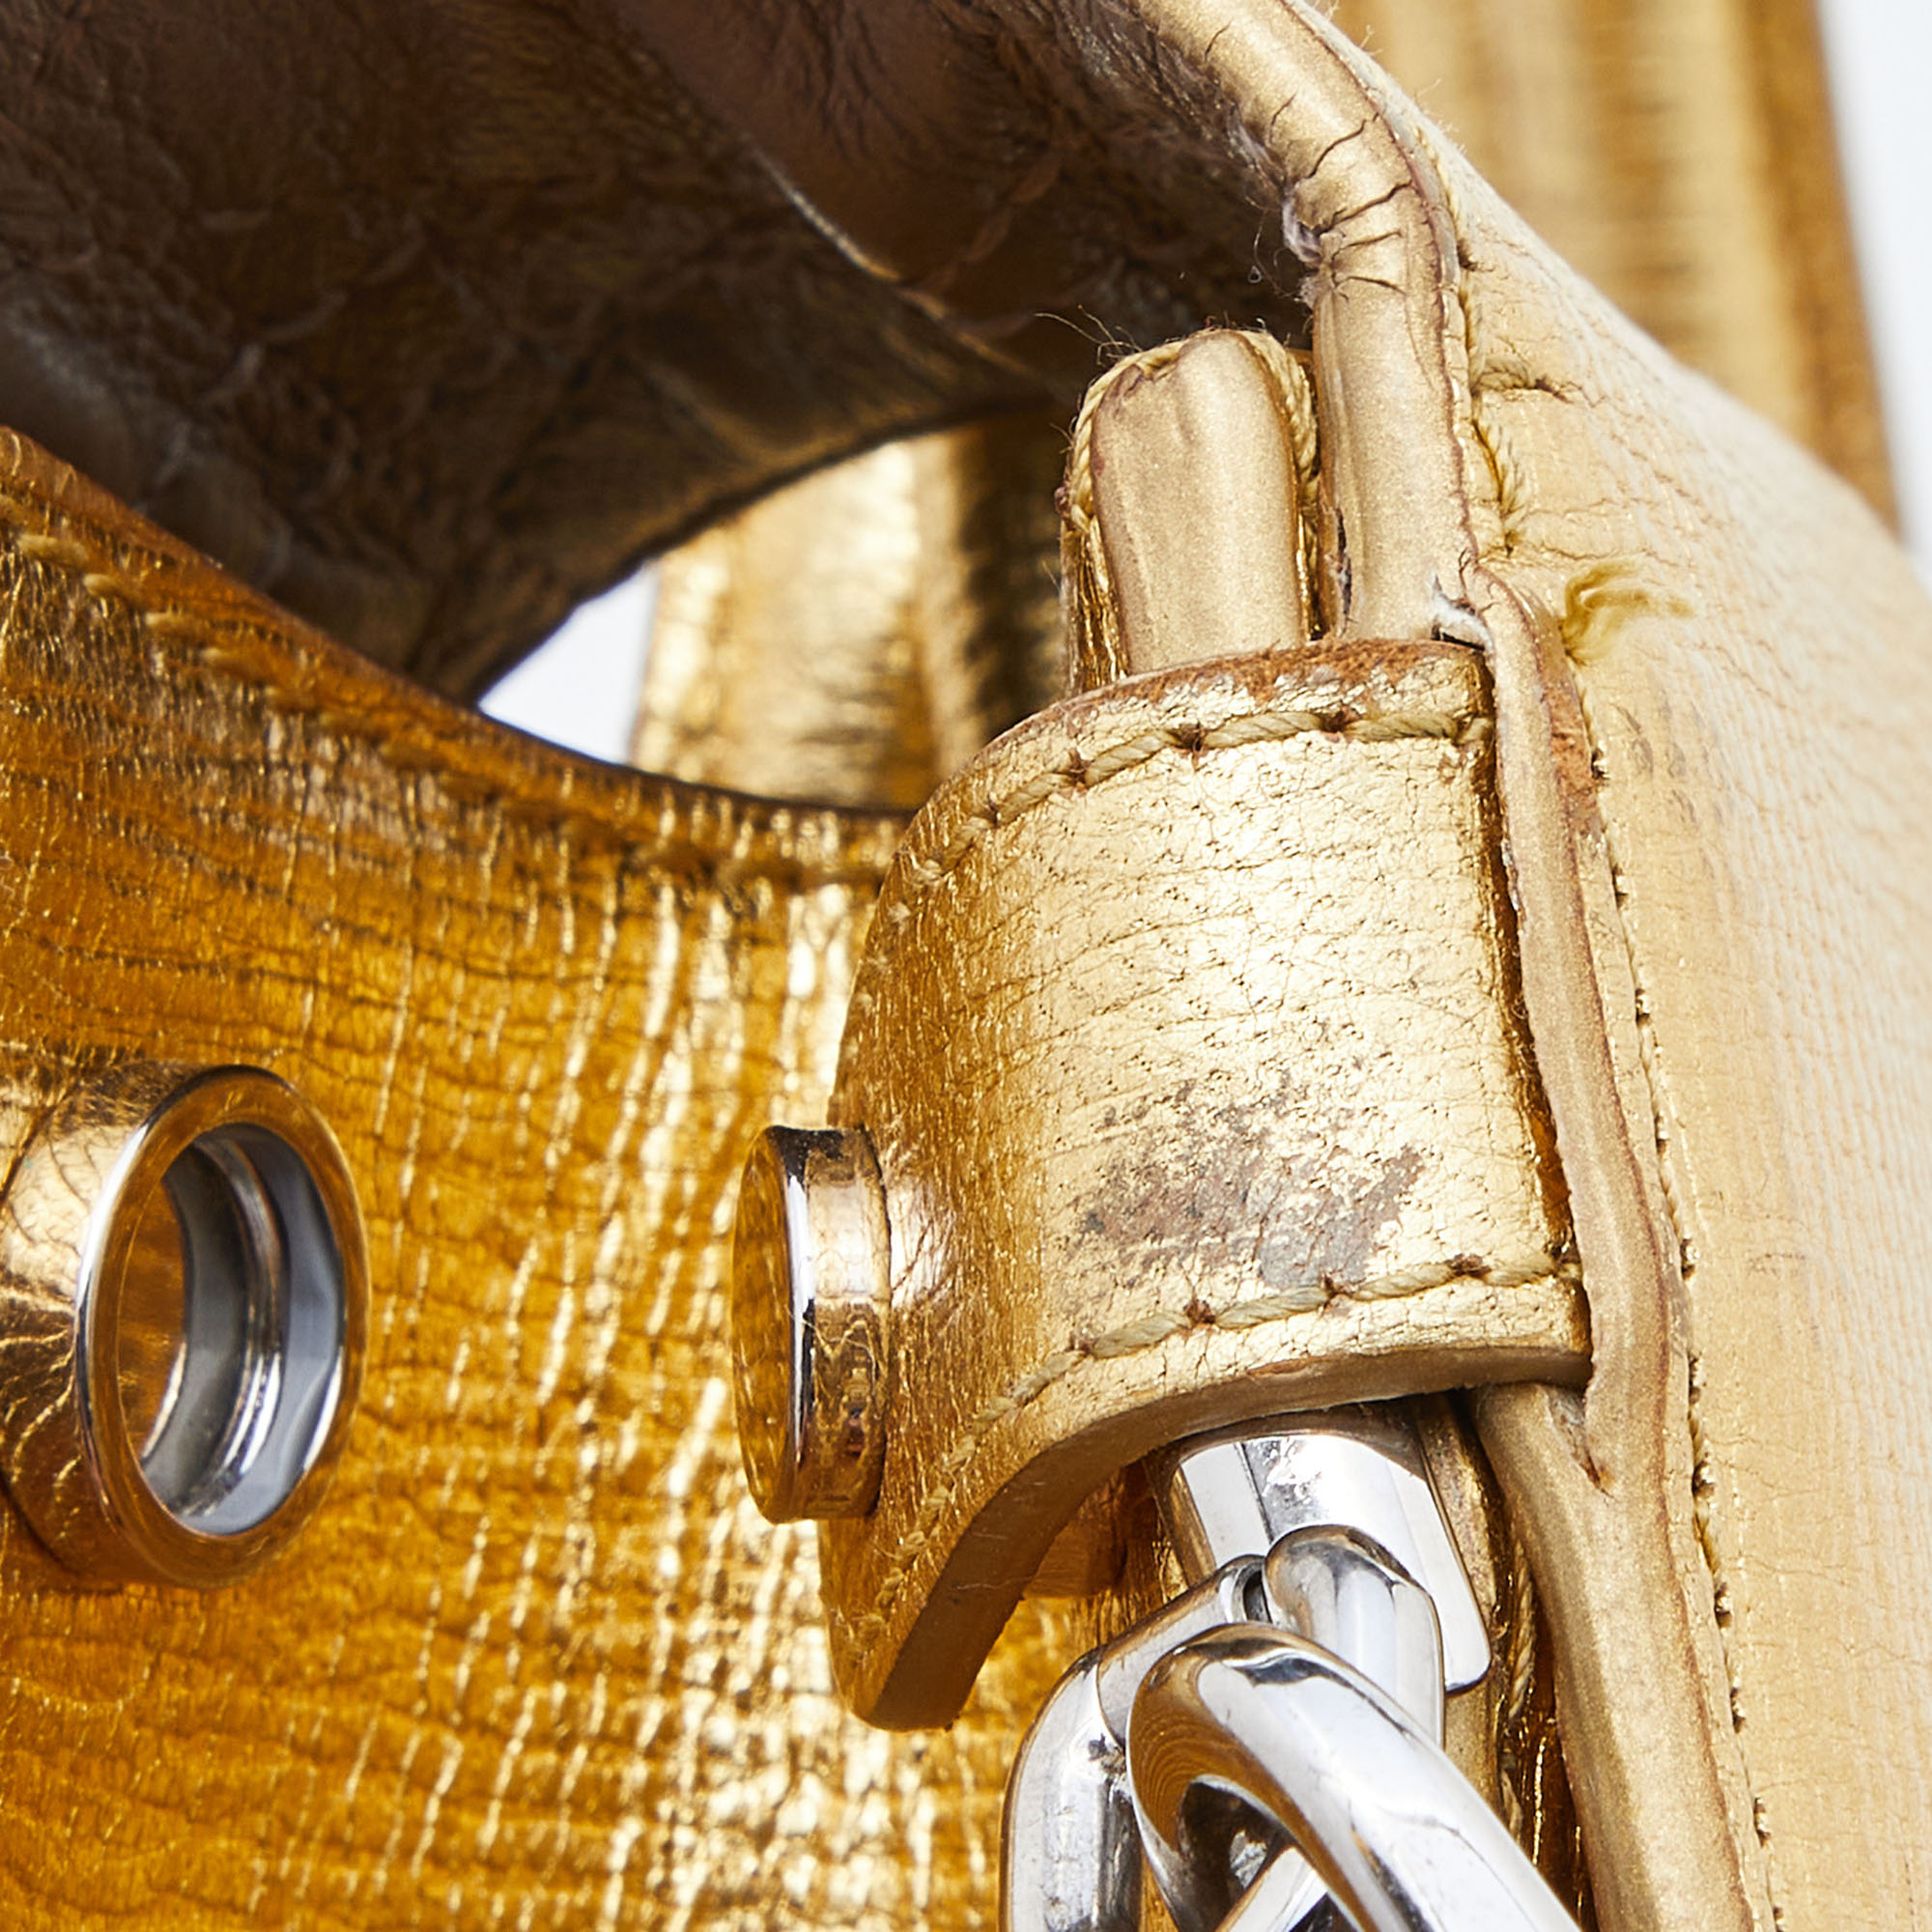 Dior Metallic Gold Leather Medium Diorever Bag